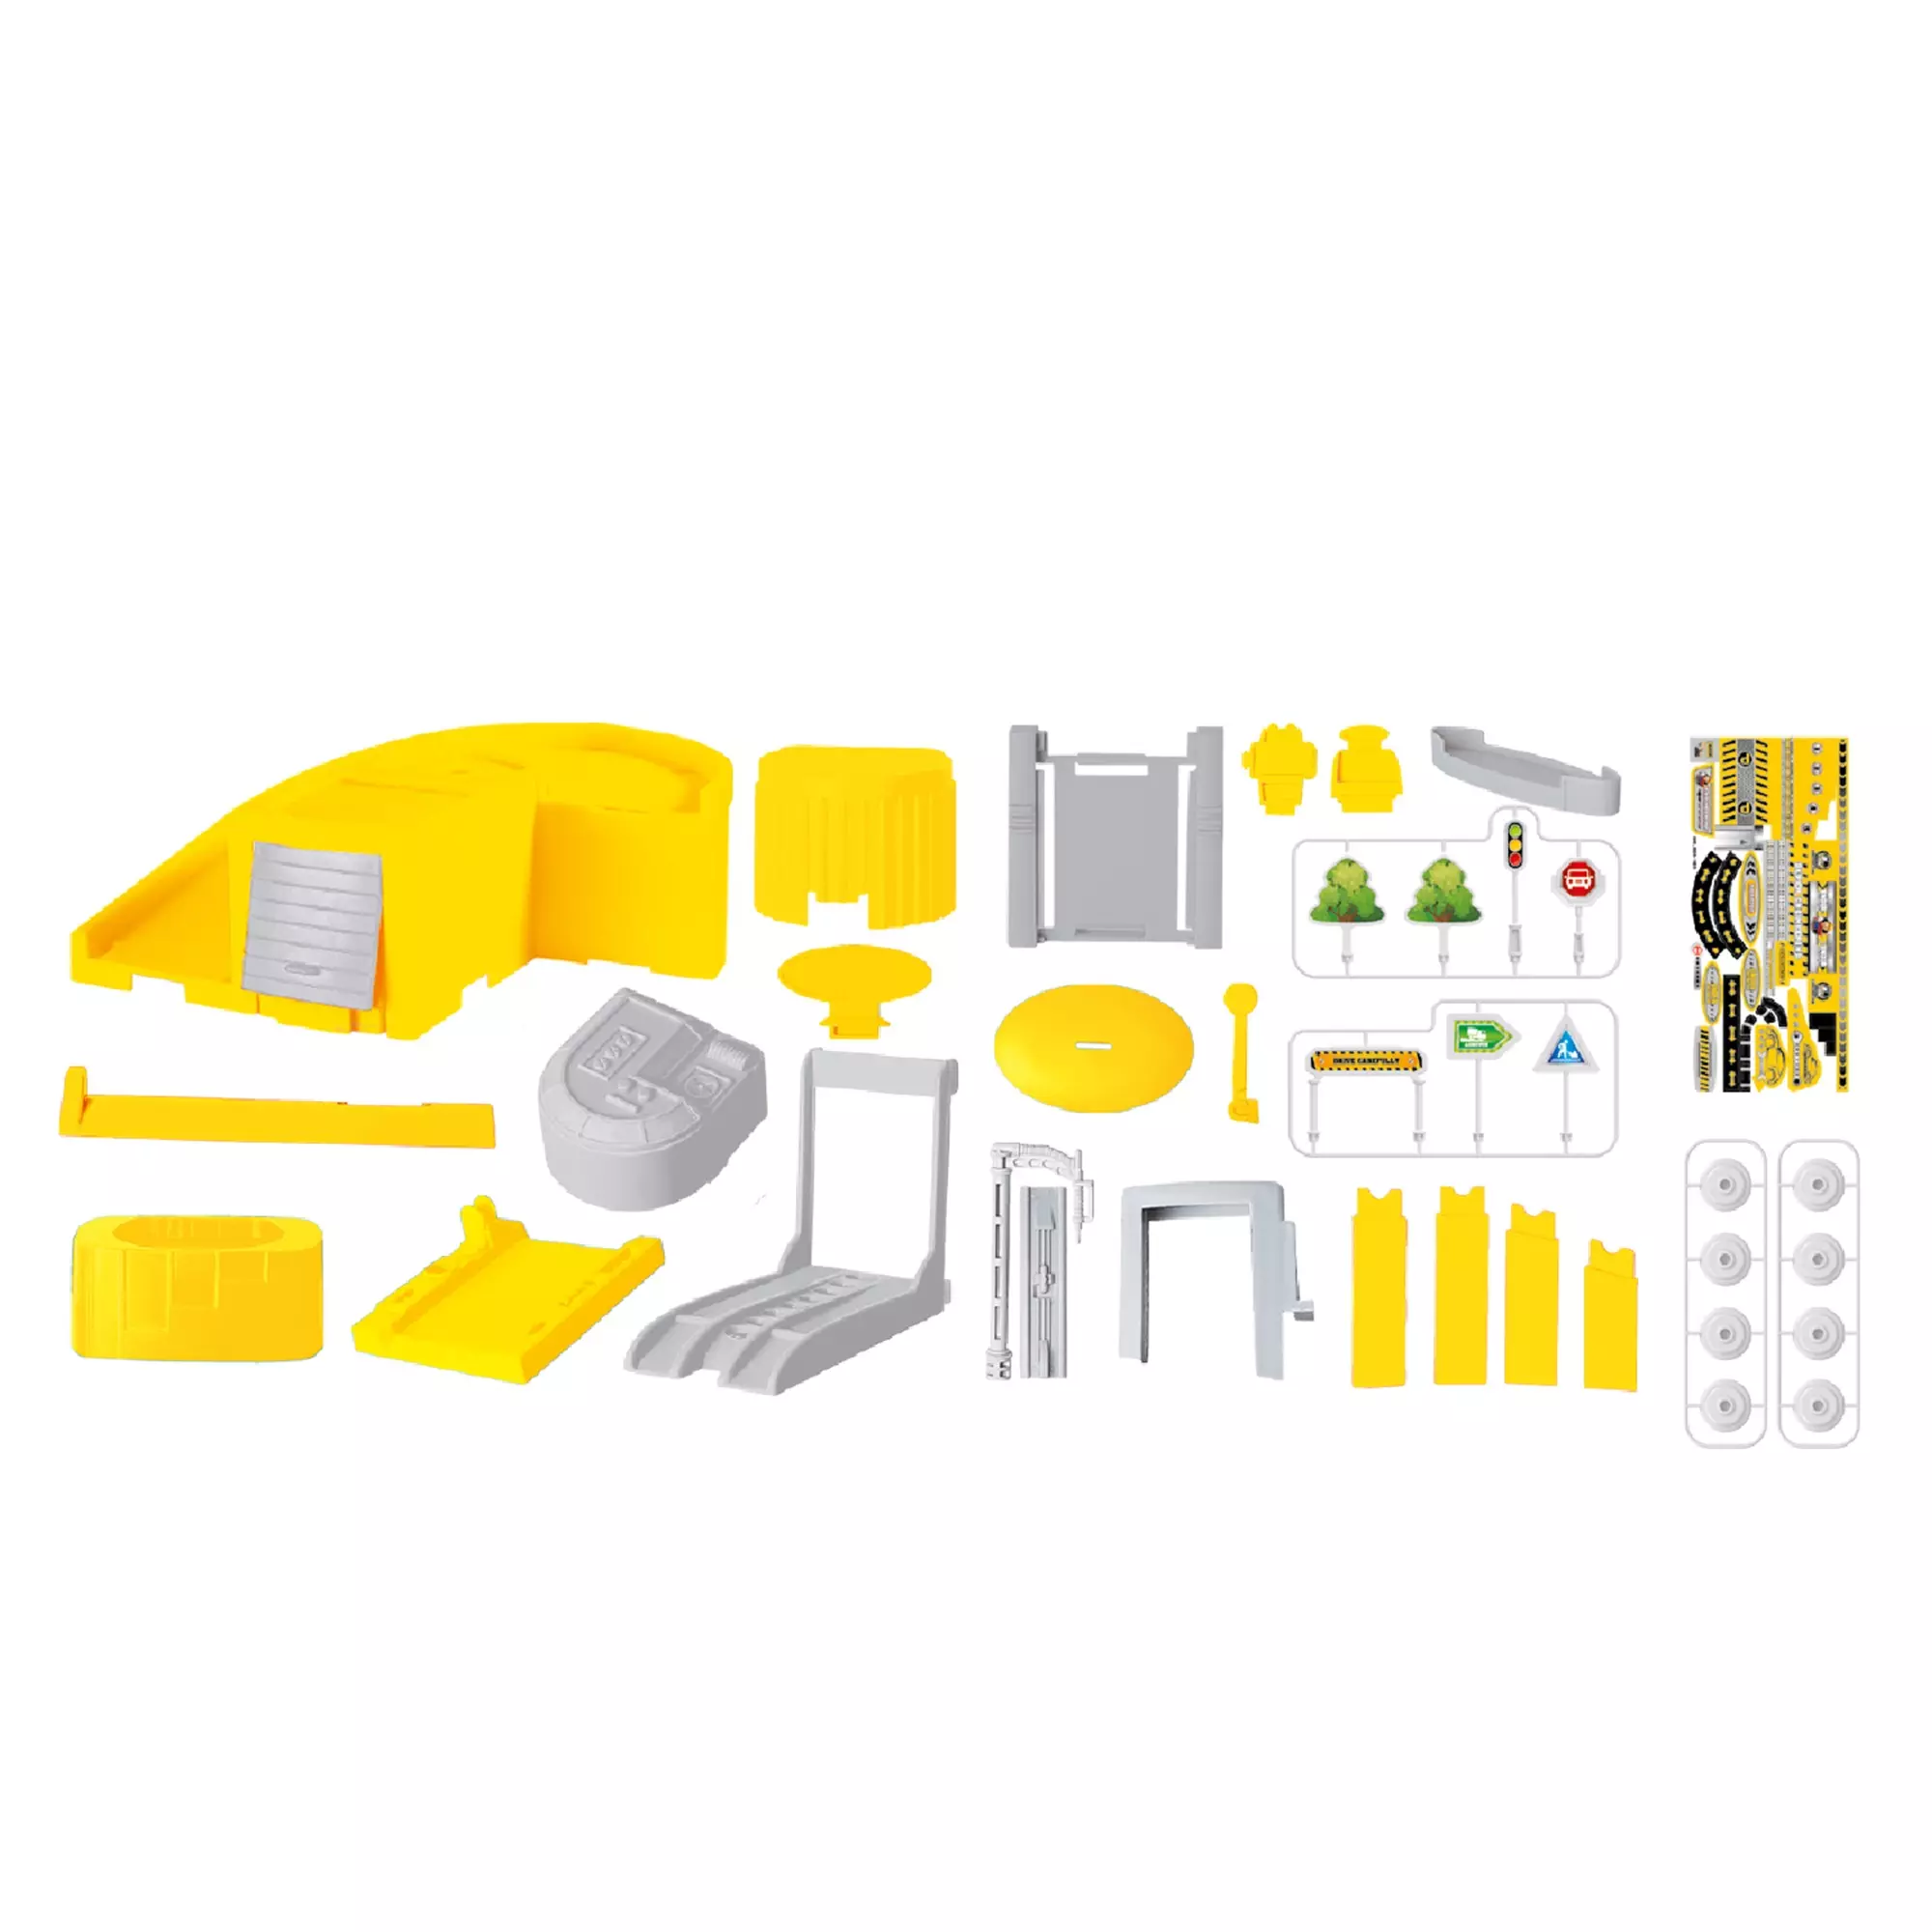 Портативный игровой набор Funky Toys - строительная станция желтый  в наборе 32 предмета FT0512788-3